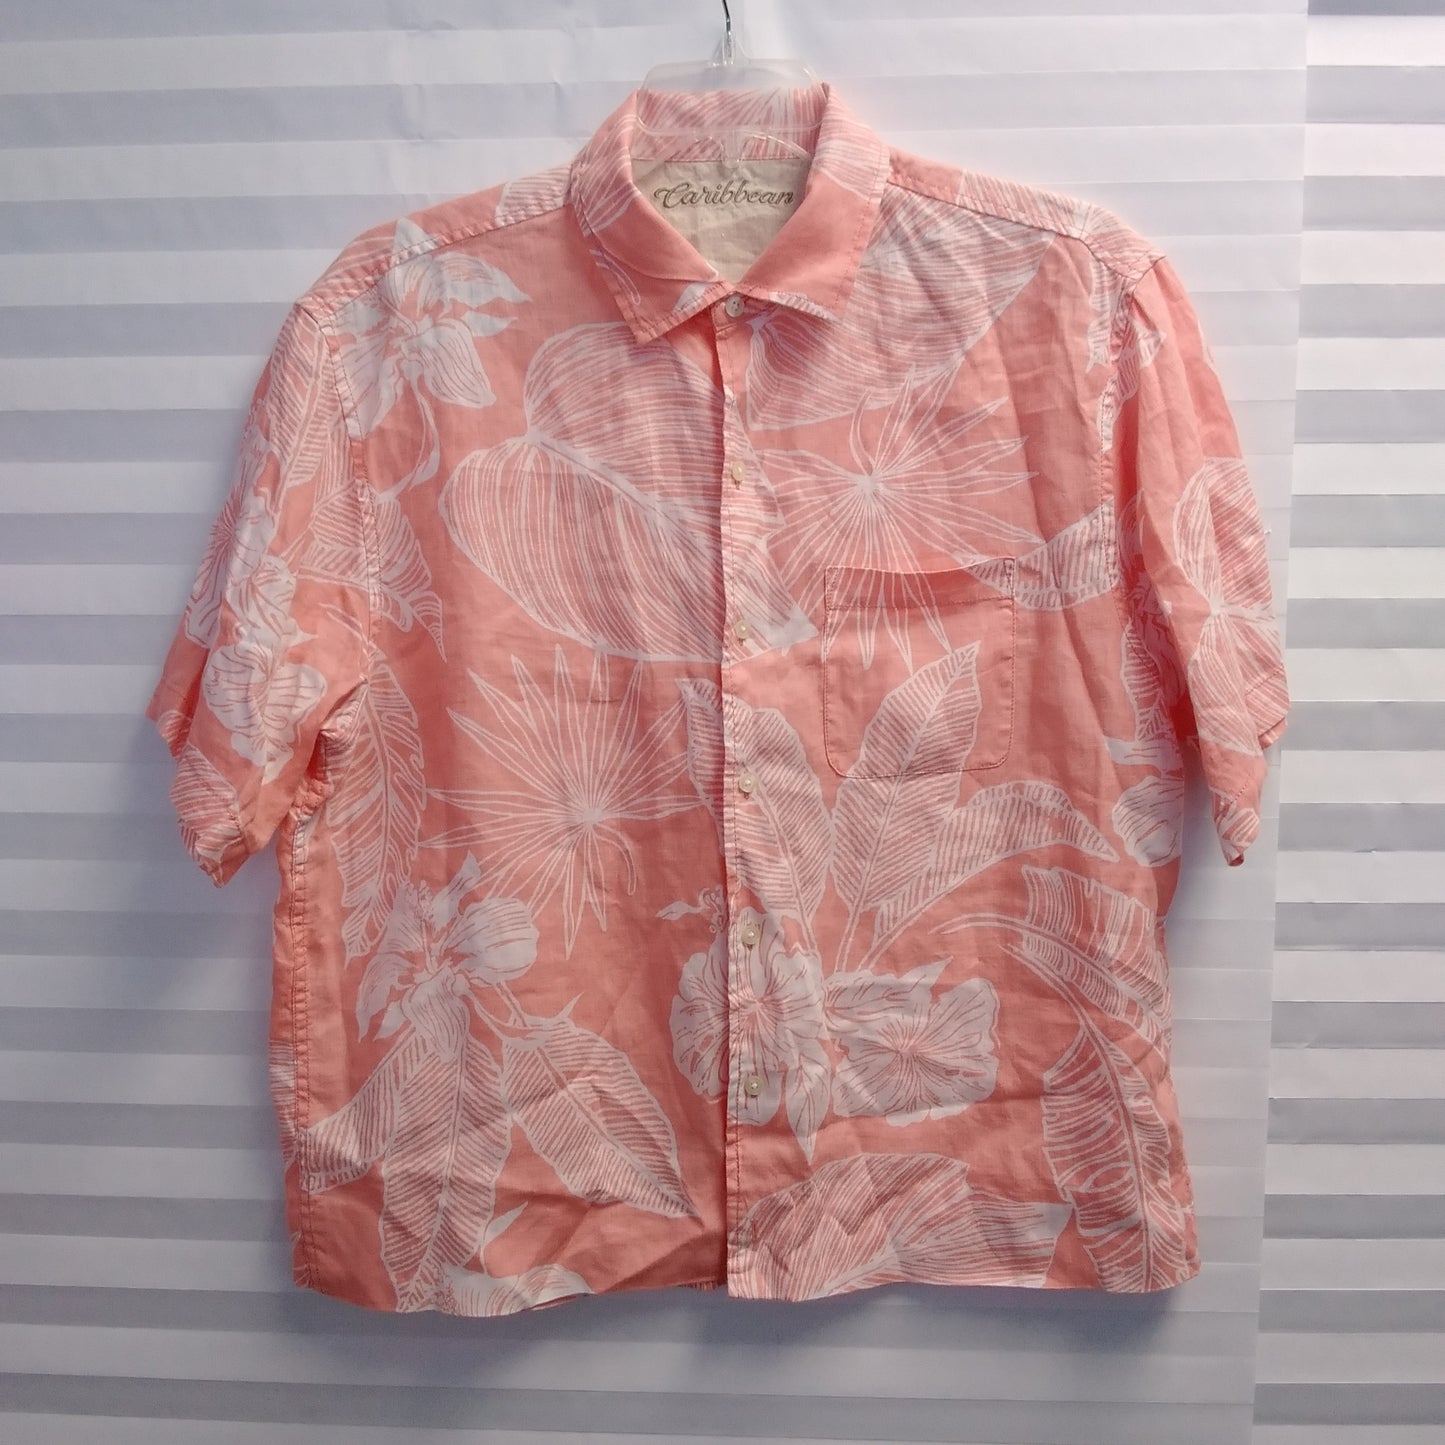 Caribbean Men's Coral 100% Linen Hawaiian Shirt - Size L